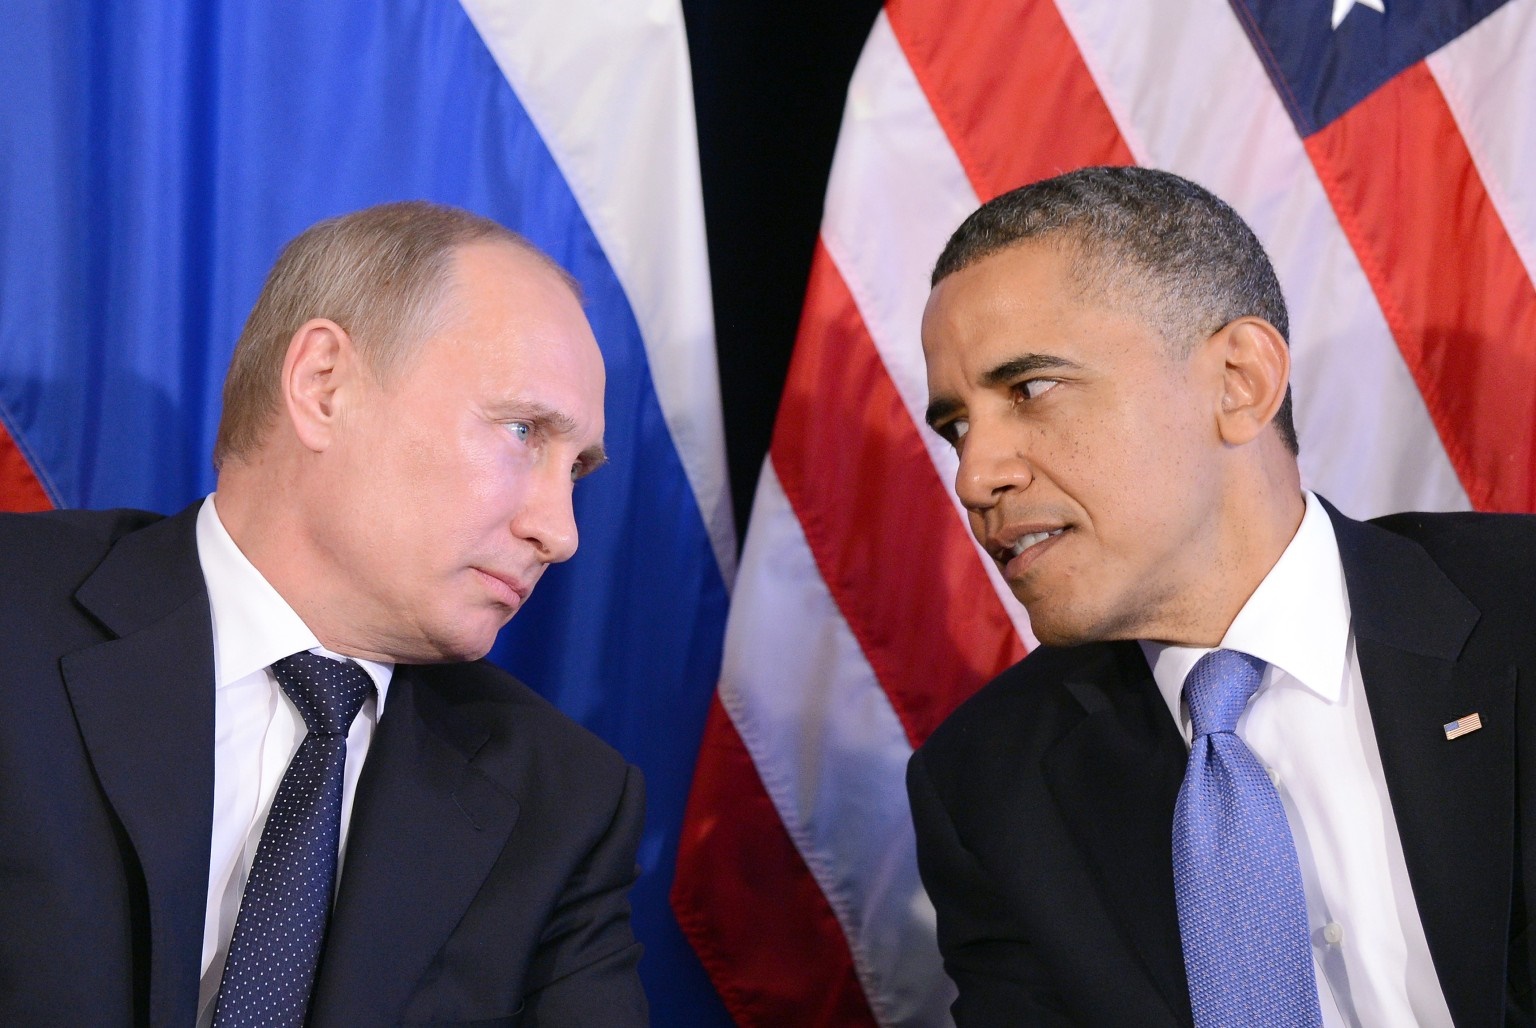 اوباما استراتژیست بهتری است یا پوتین؟